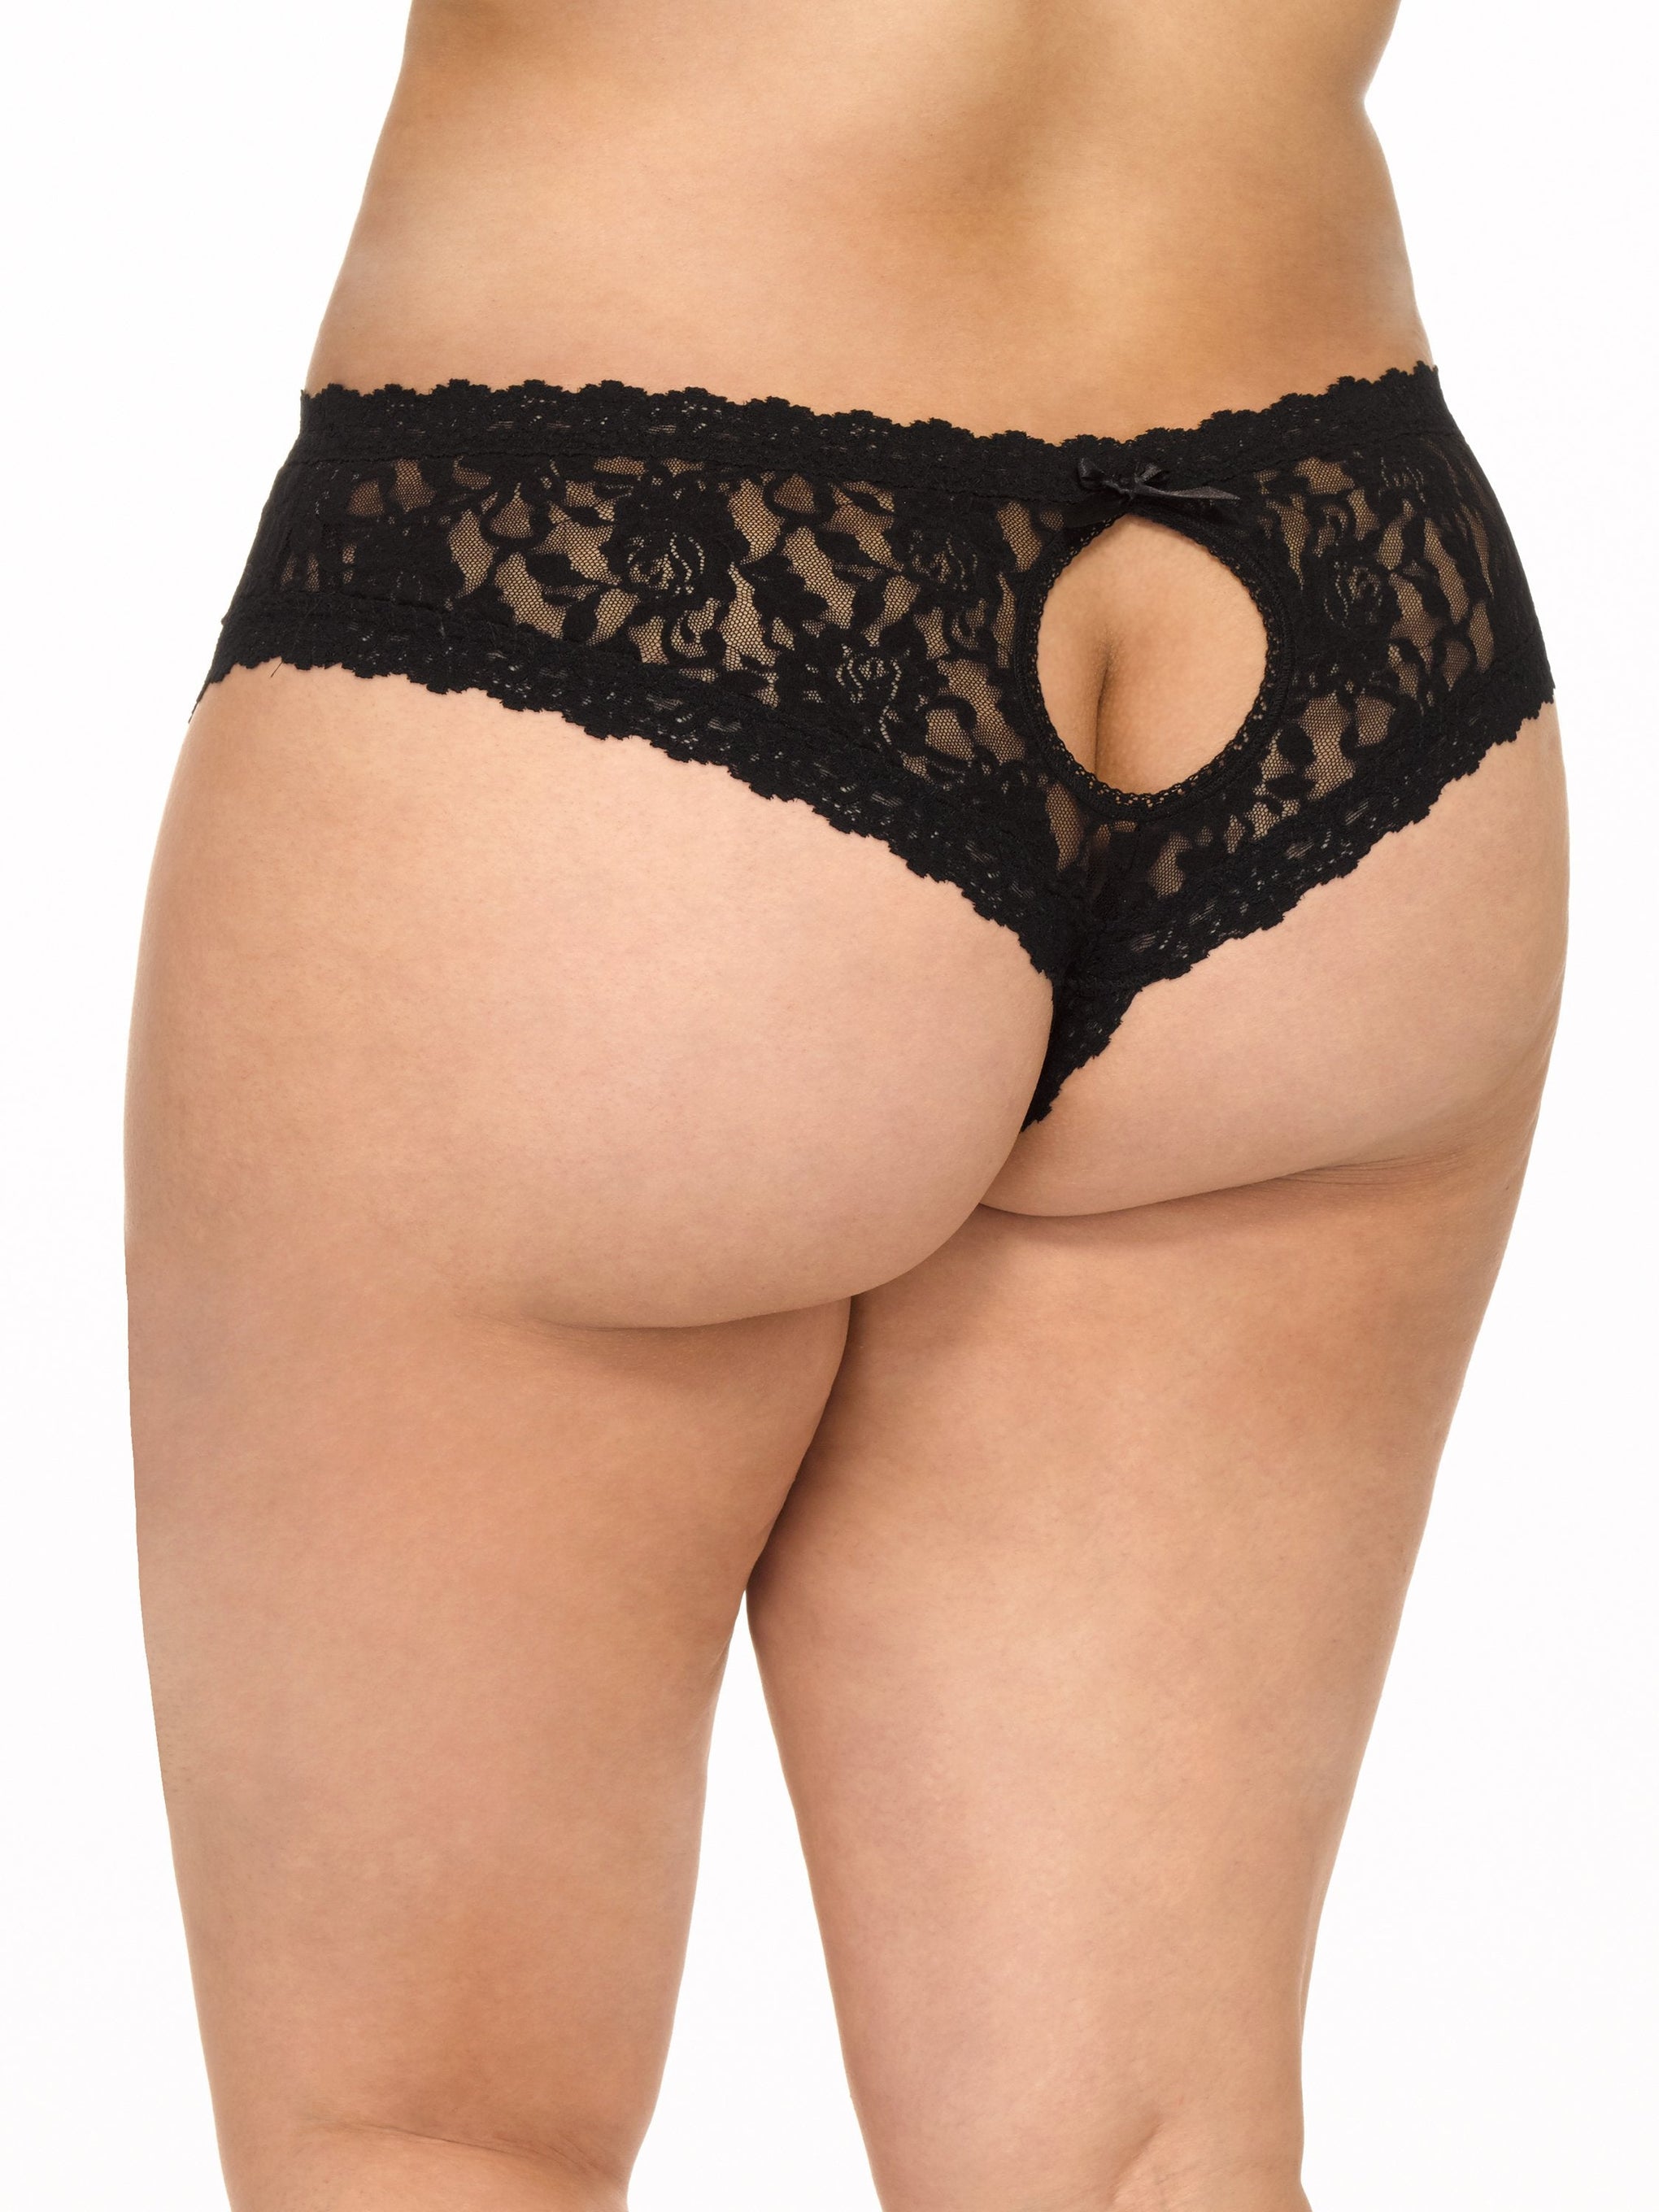 Shop Plus Size Crotchless Panties online